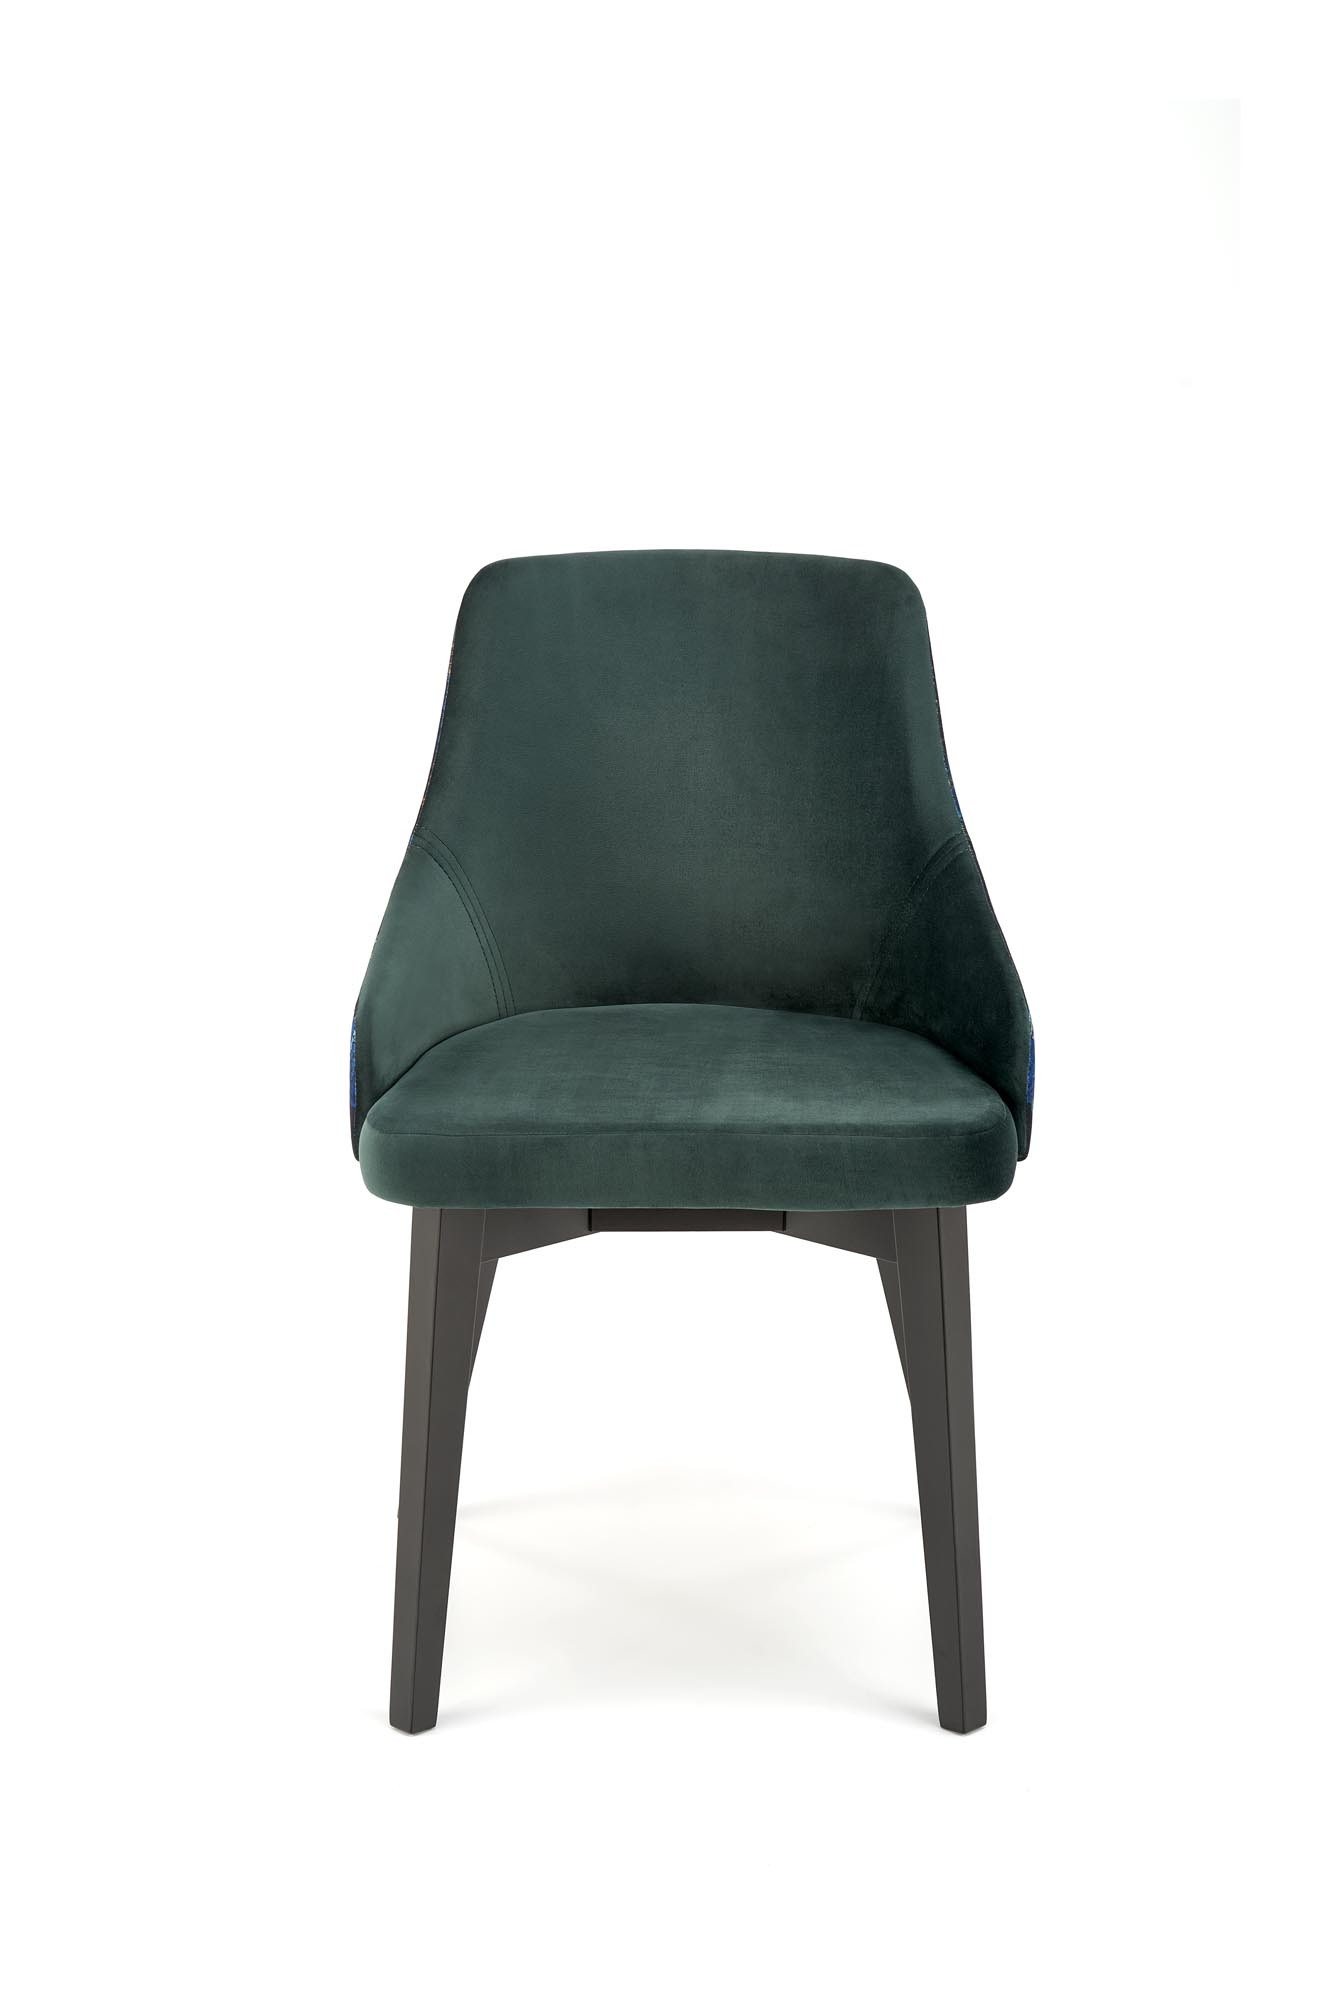 ENDO krzesło czarny / tap: BLUVEL 78 (c. zielony)